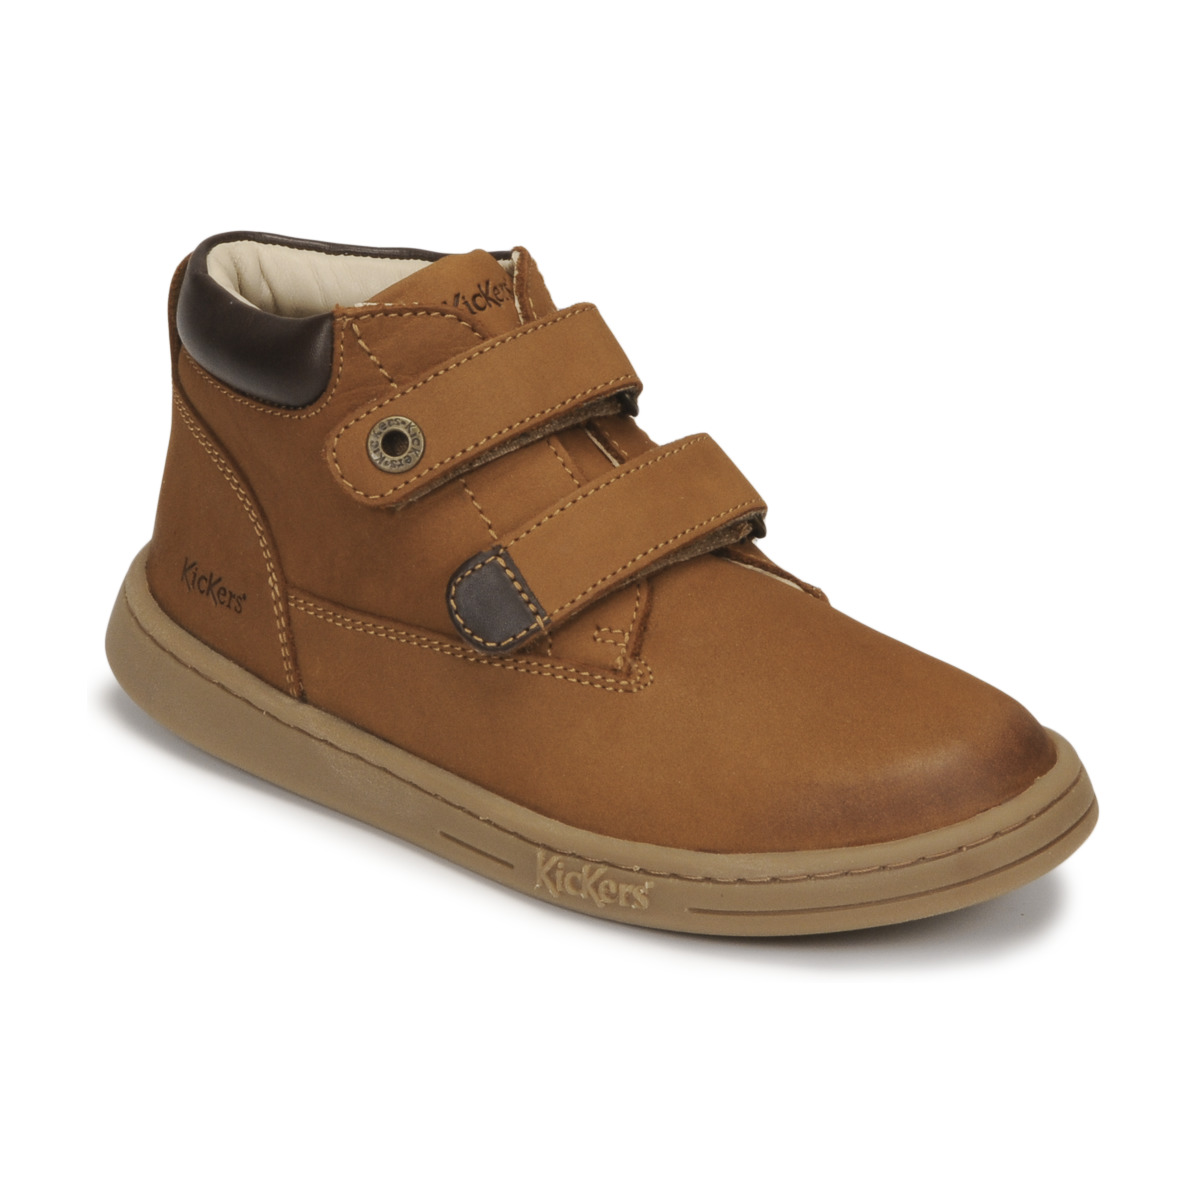 Schuhe Kinder Boots Kickers TACKEASY Camel